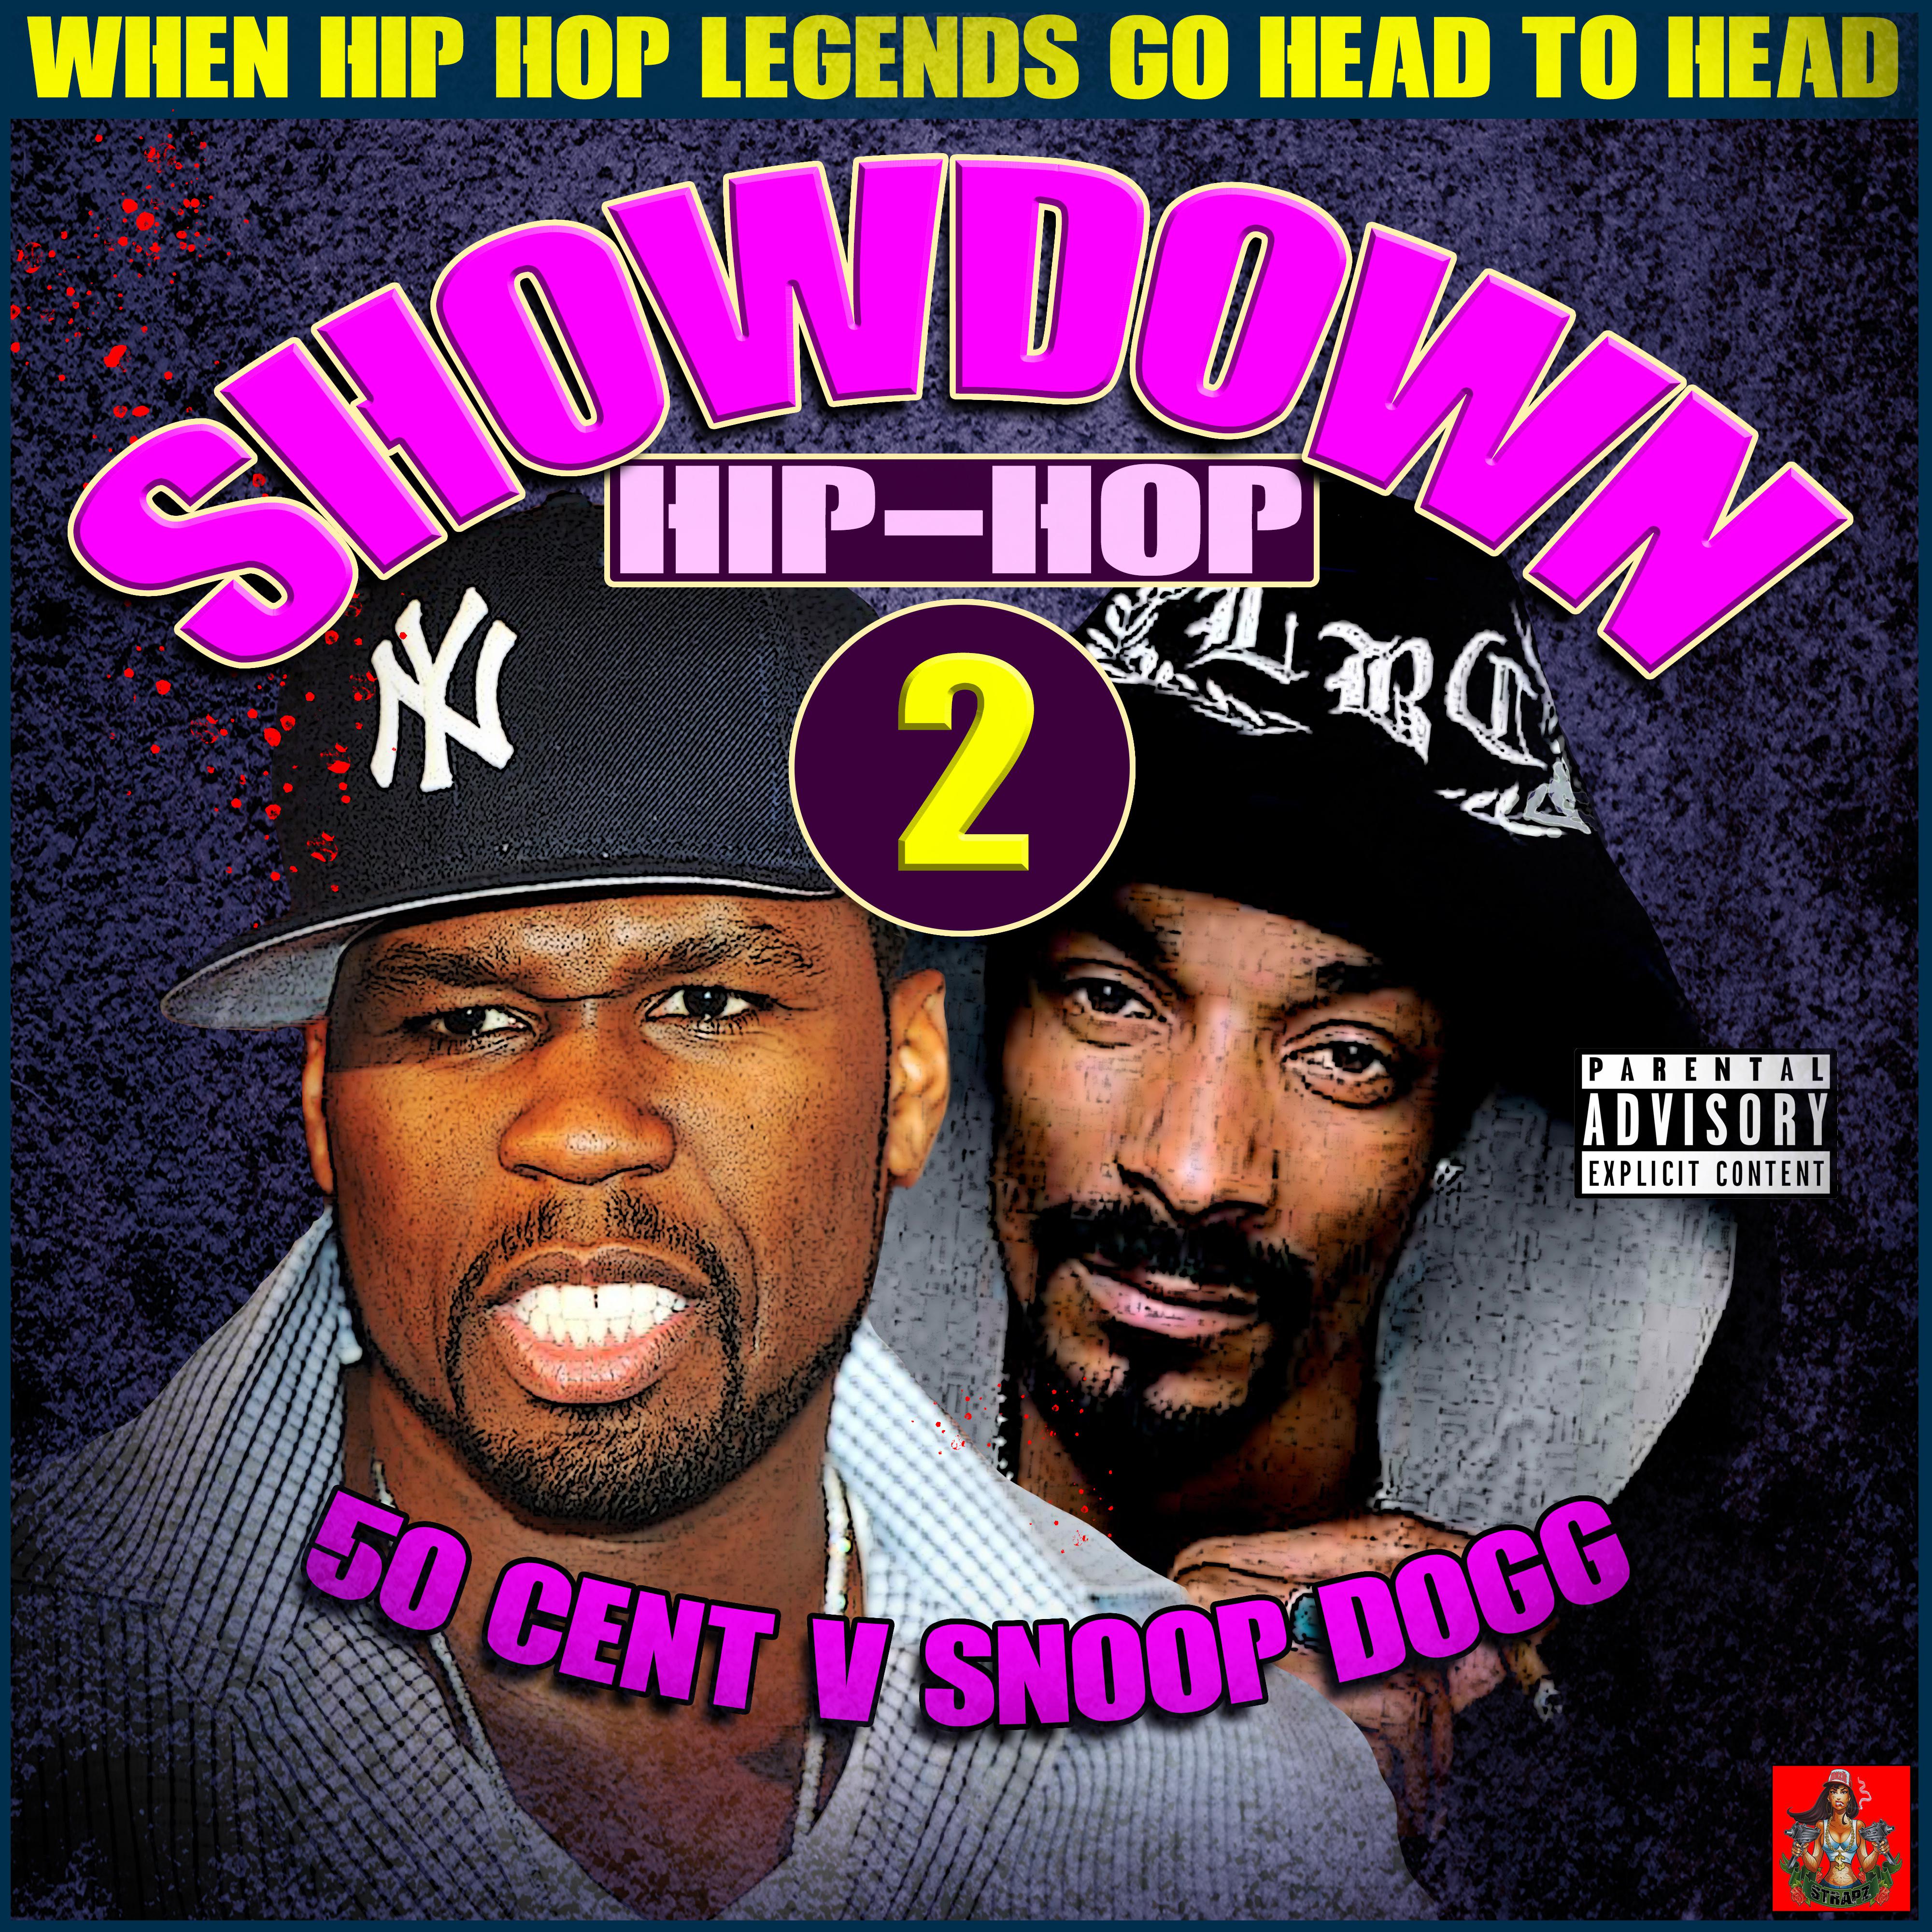 Hip-Hop Showdown - 50 Cent v Snoop Dogg Round 2